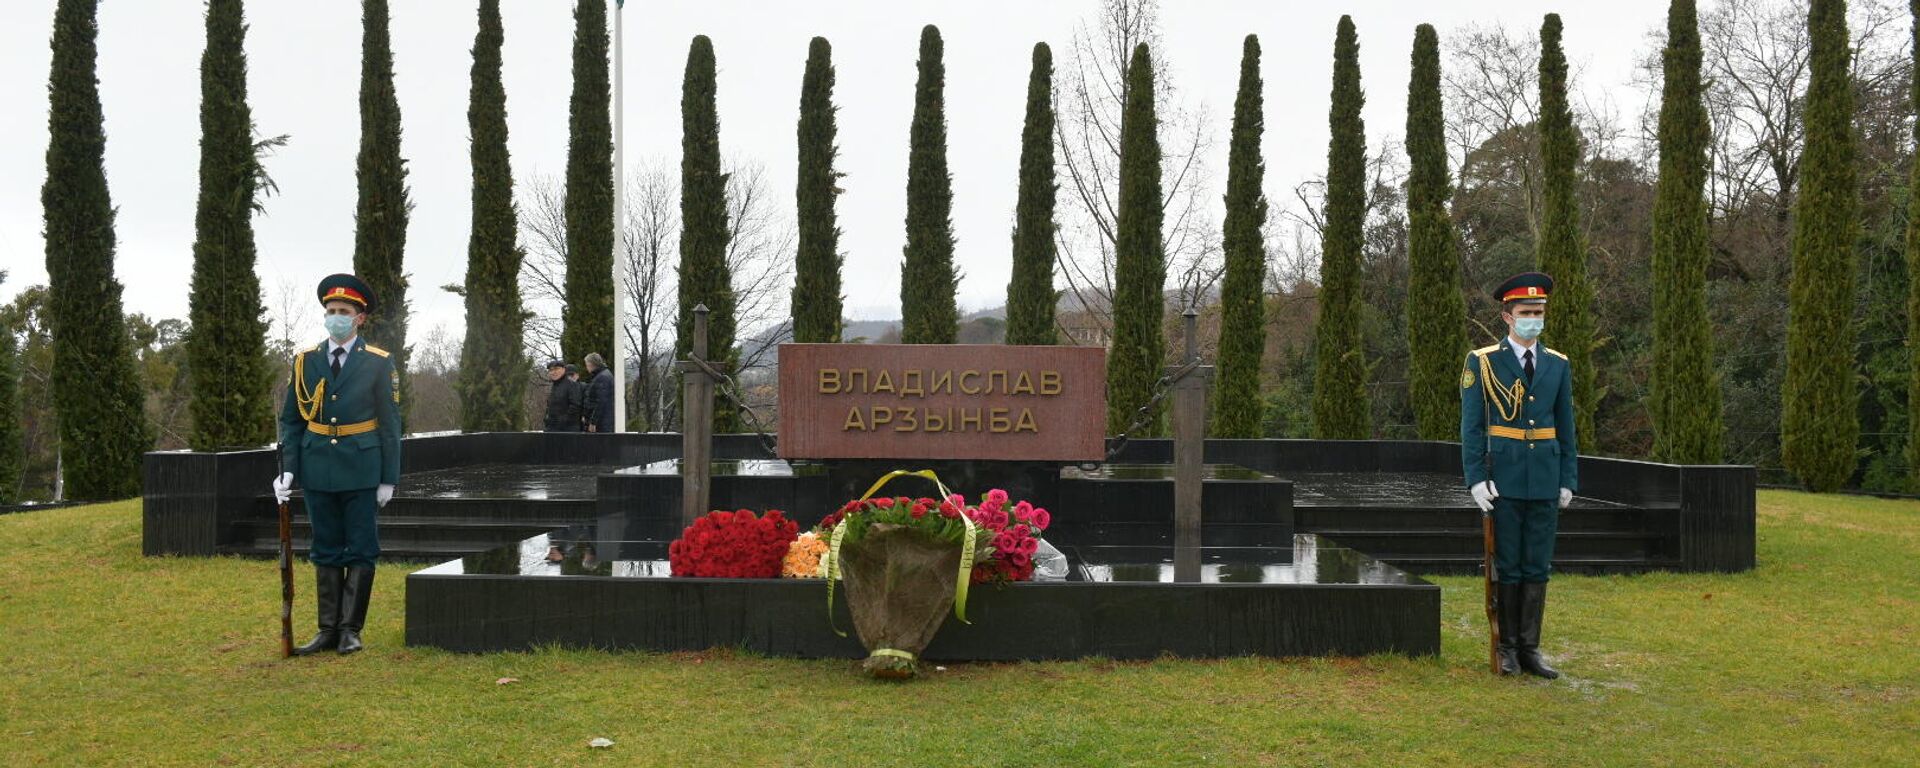 Президент Республики Абхазия возложил цветы у мемориала Владислава Ардзинба  - Sputnik Абхазия, 1920, 04.03.2022